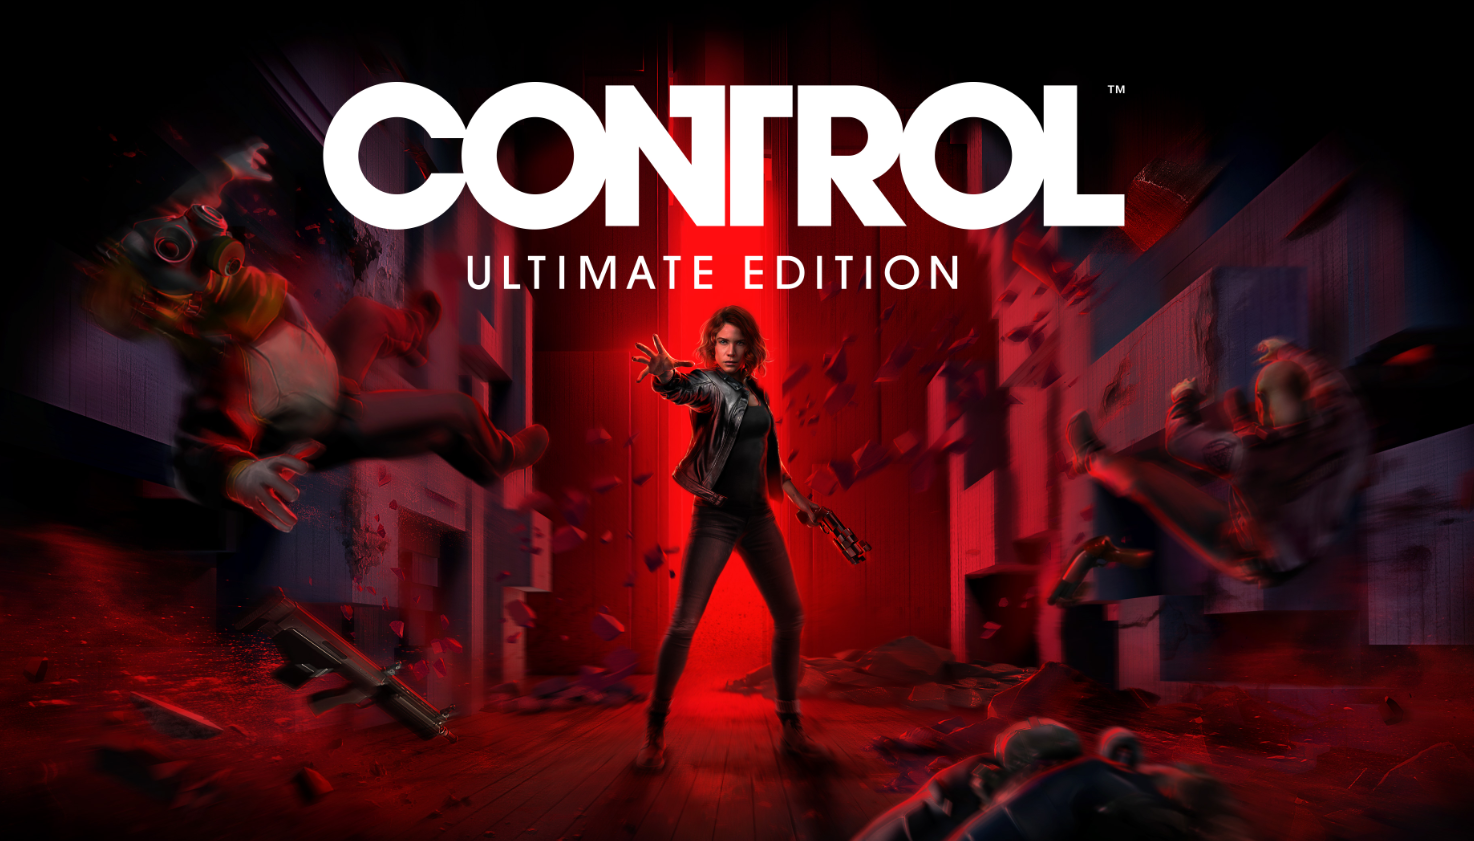 《控制：终极合辑》次世代版本将于2021年初推出